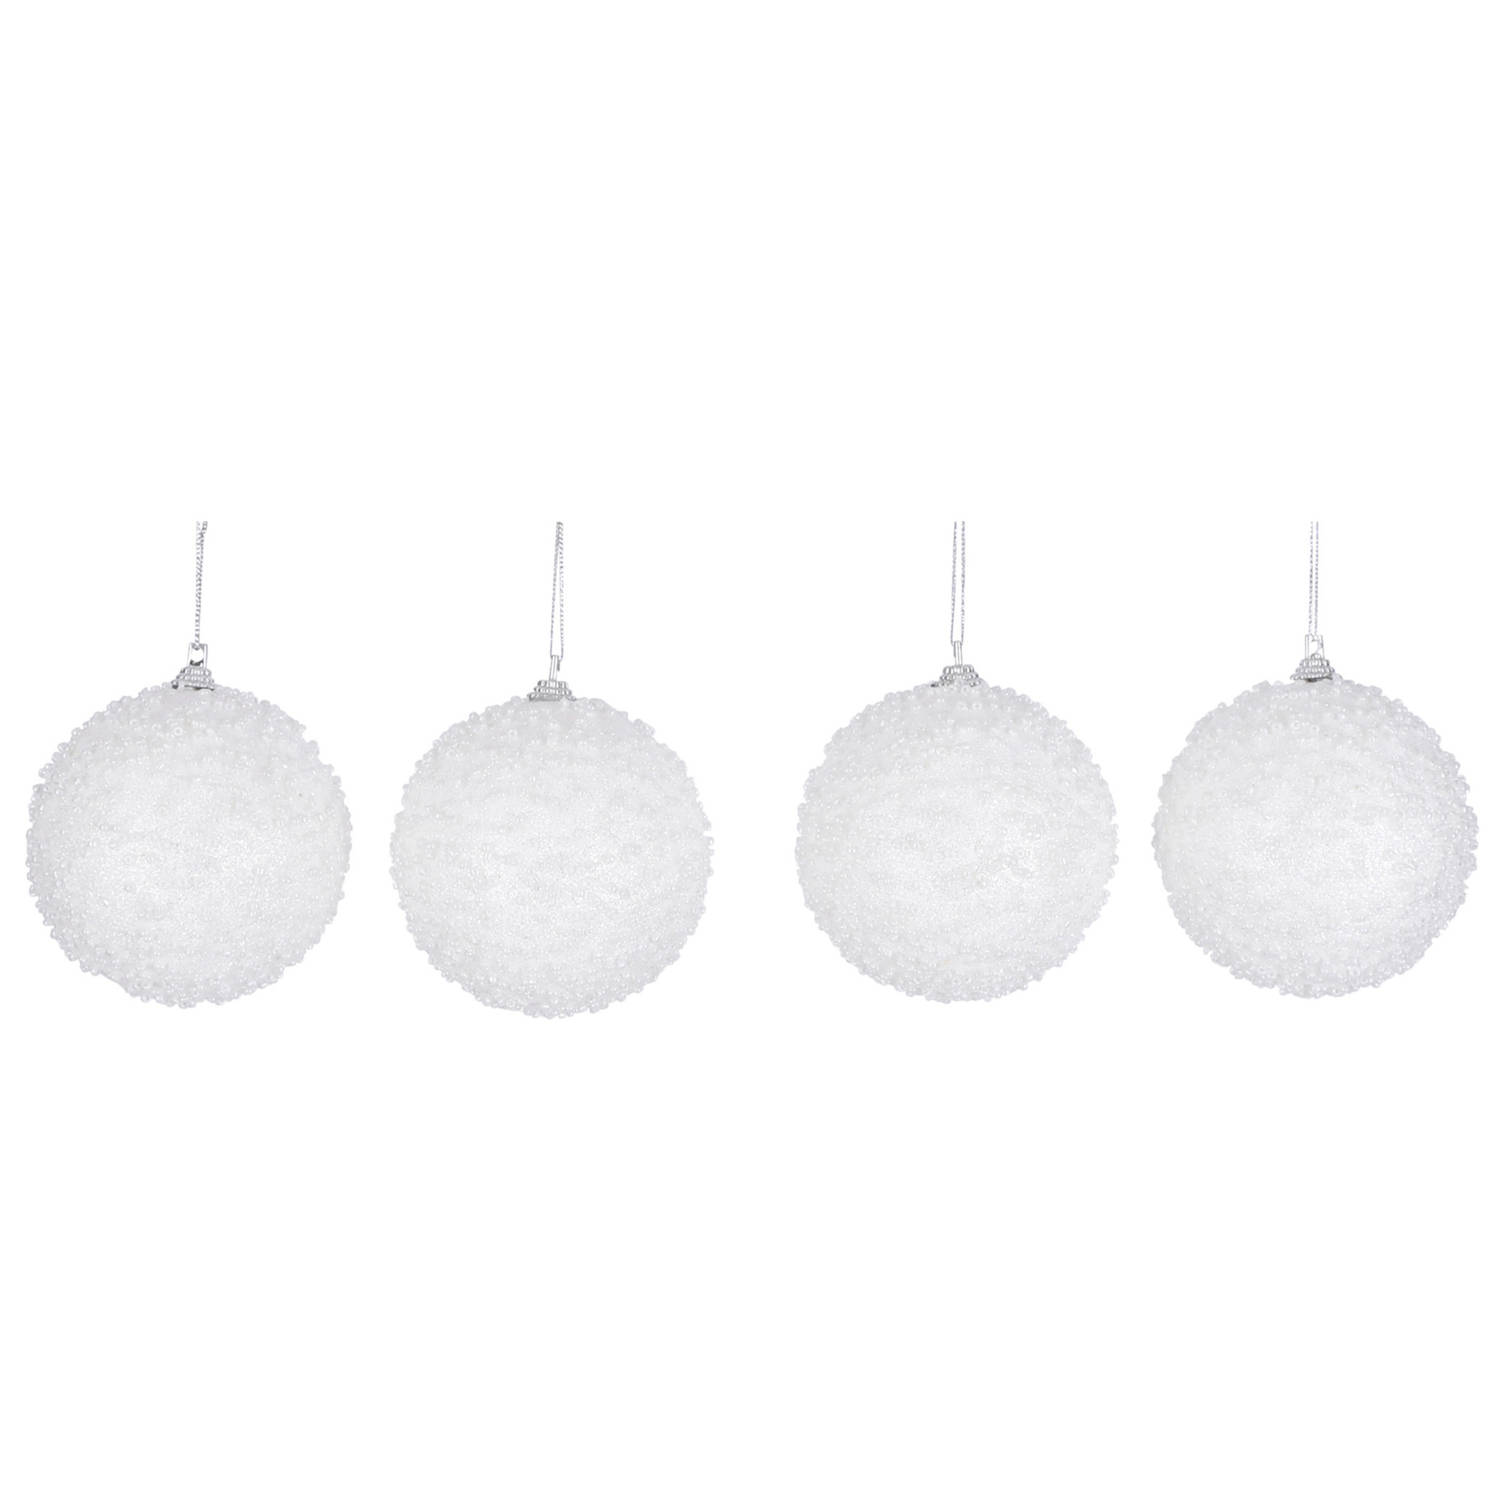 4x Luxe Witte Sneeuw Kerstballen Van Foam 8 Cm - Kerstbal